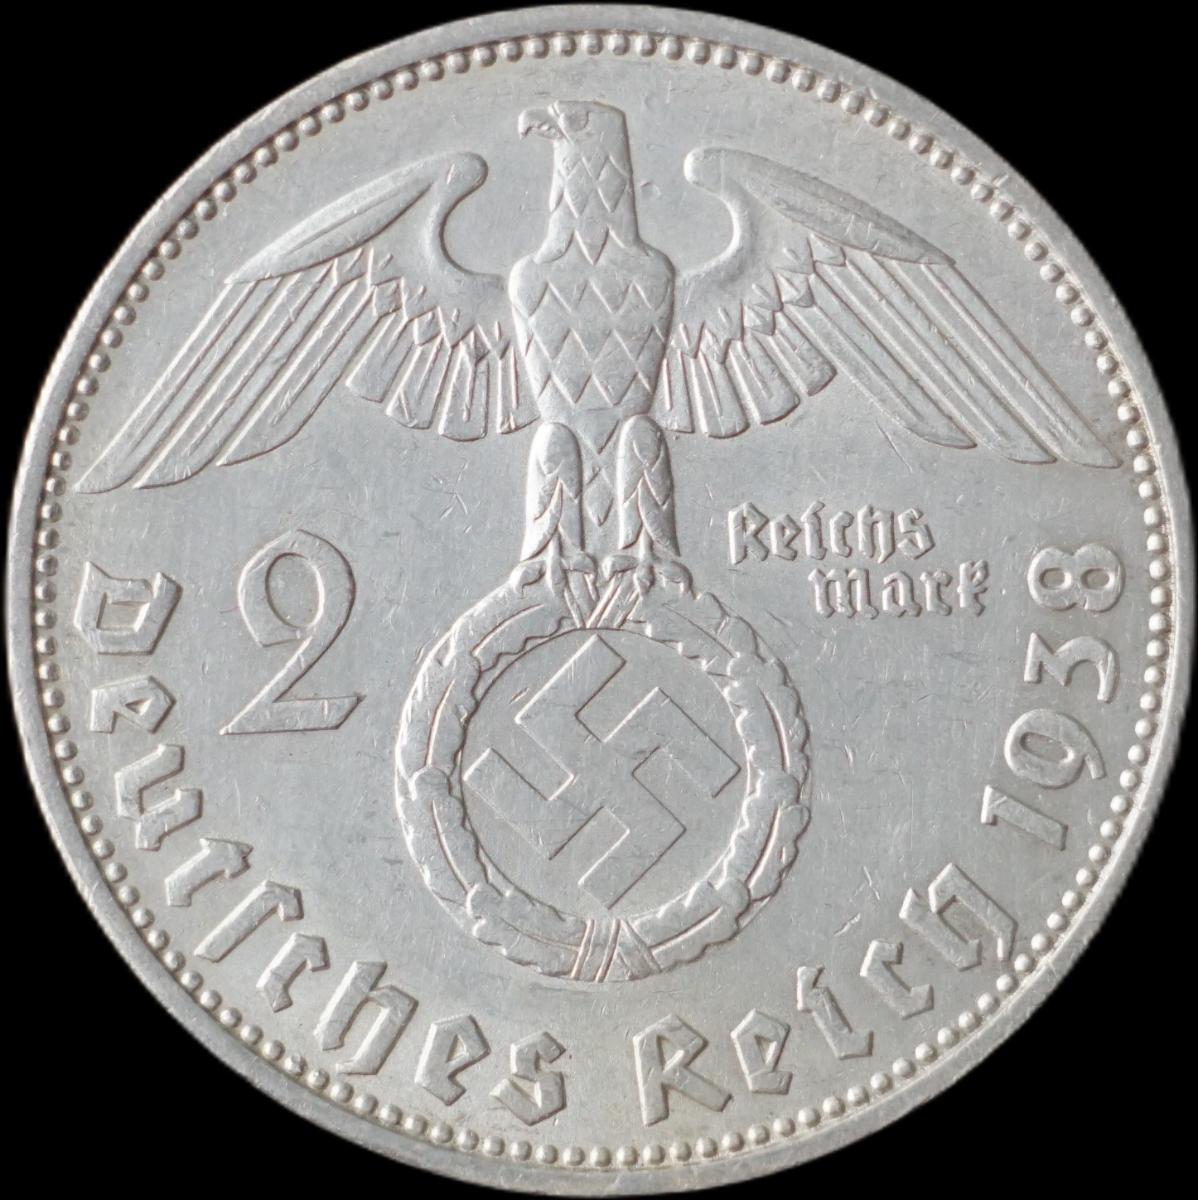 Nemecko - 2 Marka 1938 F Hindenburg - strieborná minca - Numizmatika